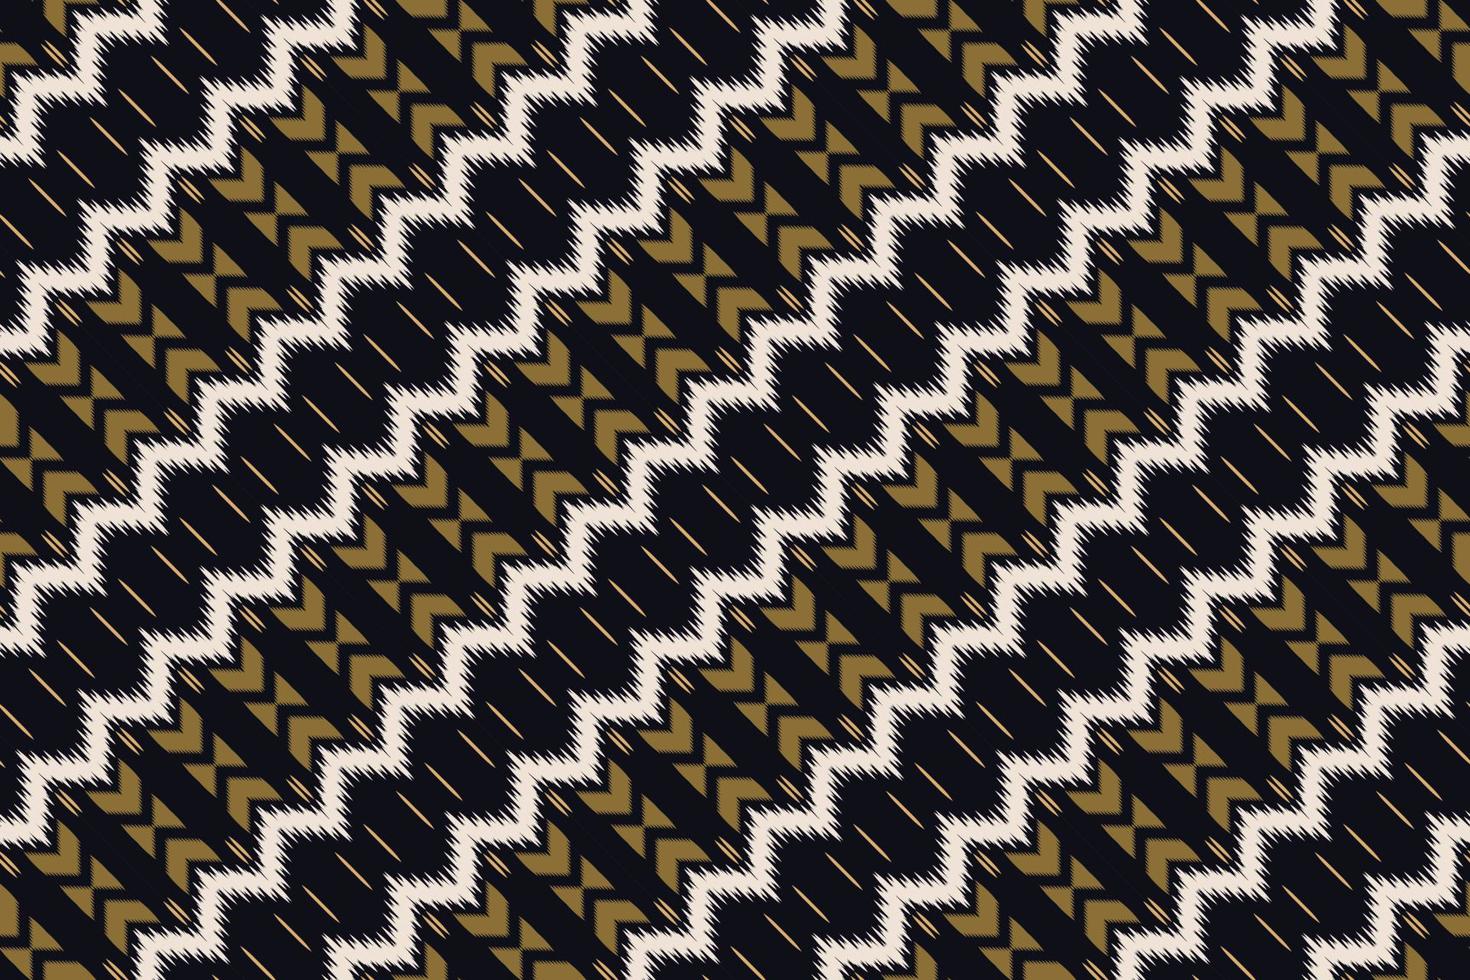 padrão sem emenda abstrato tribal da tela ikat. étnico geométrico ikkat batik vetor digital design têxtil para estampas tecido saree mughal pincel símbolo faixas textura kurti kurtis kurtas